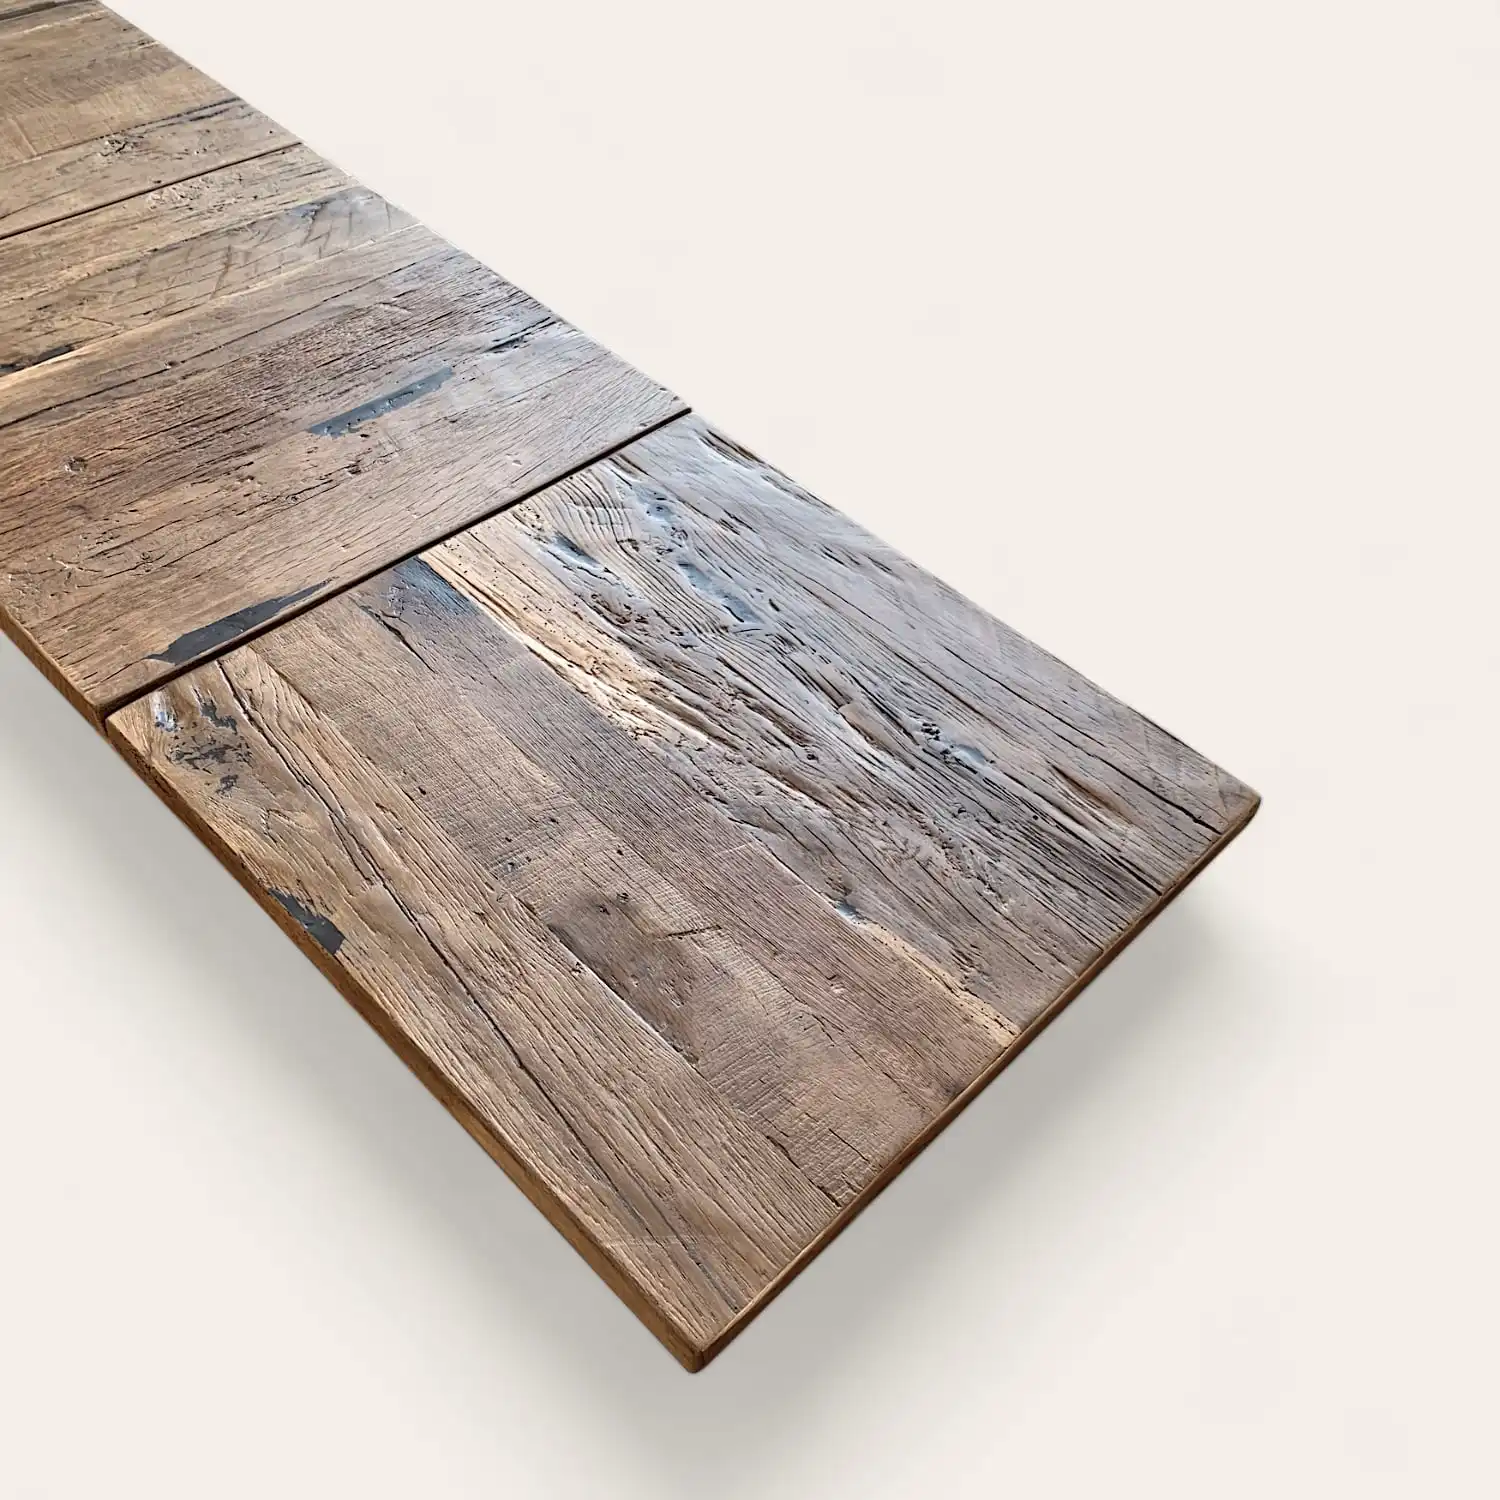  Table rustique en bois avec surface texturée et patinée en panneaux vieux bois sur fond blanc. 